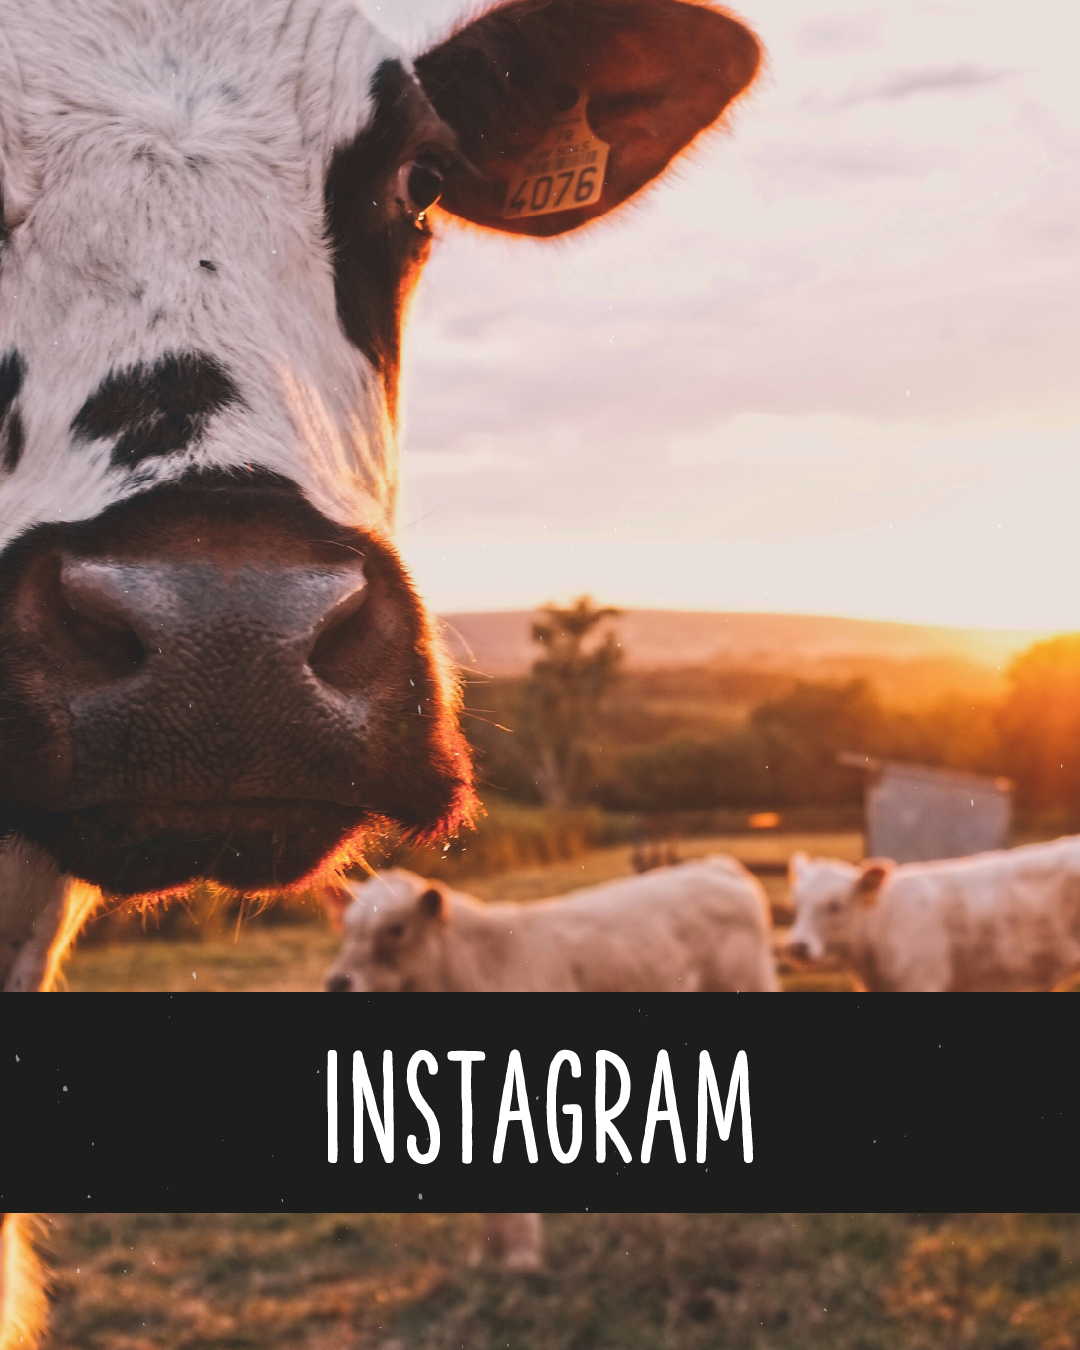 Großaufnahme einer Kuh, im Hintergrund Sonnenuntergang. Text unten im Bild: Instagram